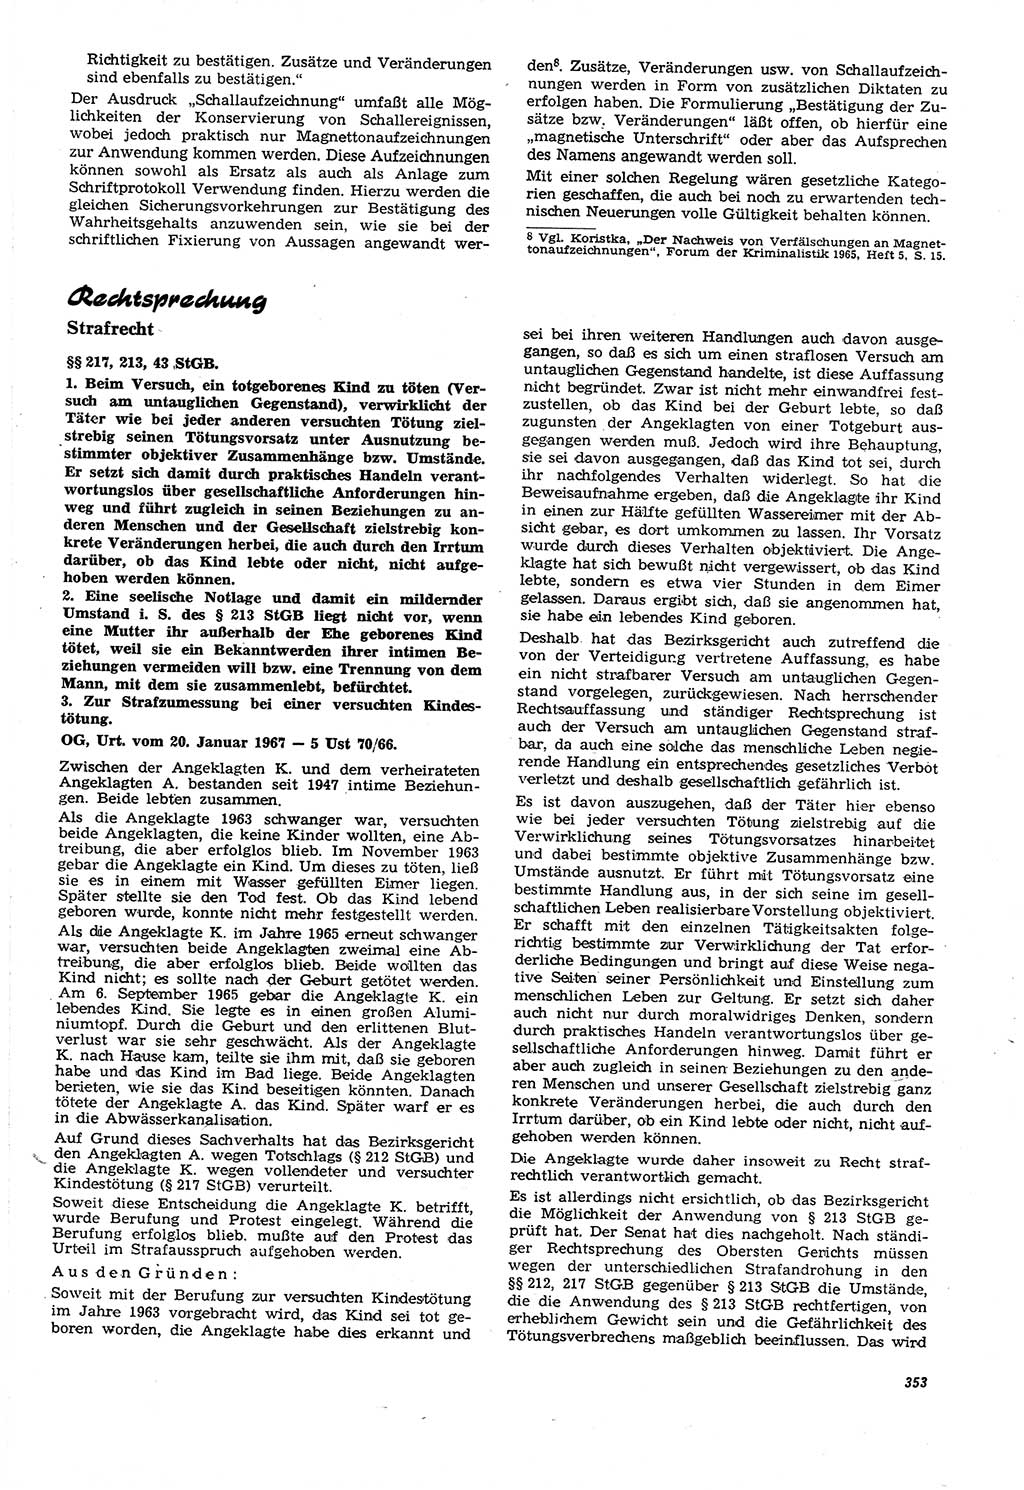 Neue Justiz (NJ), Zeitschrift für Recht und Rechtswissenschaft [Deutsche Demokratische Republik (DDR)], 21. Jahrgang 1967, Seite 353 (NJ DDR 1967, S. 353)